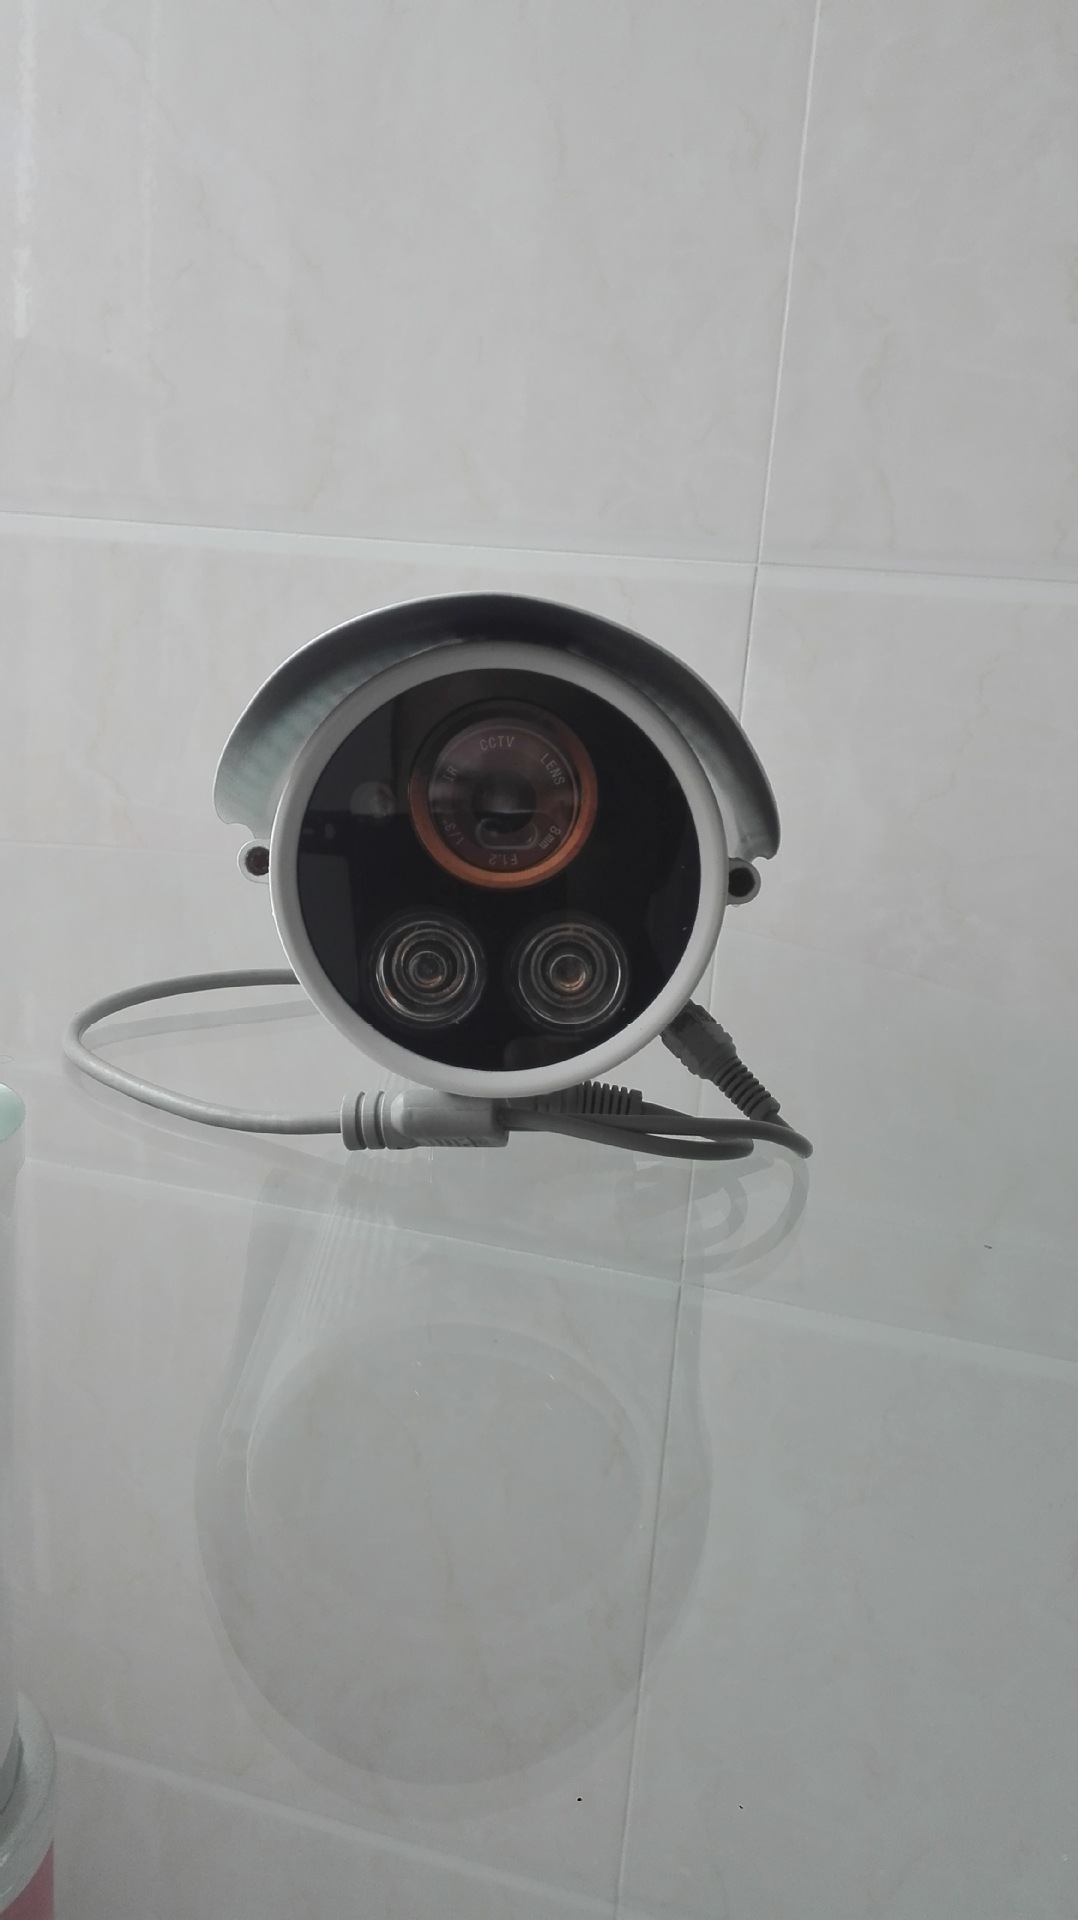 模拟高清监控摄像头工业家用1200线厂家直销红外夜视防水摄像机图片